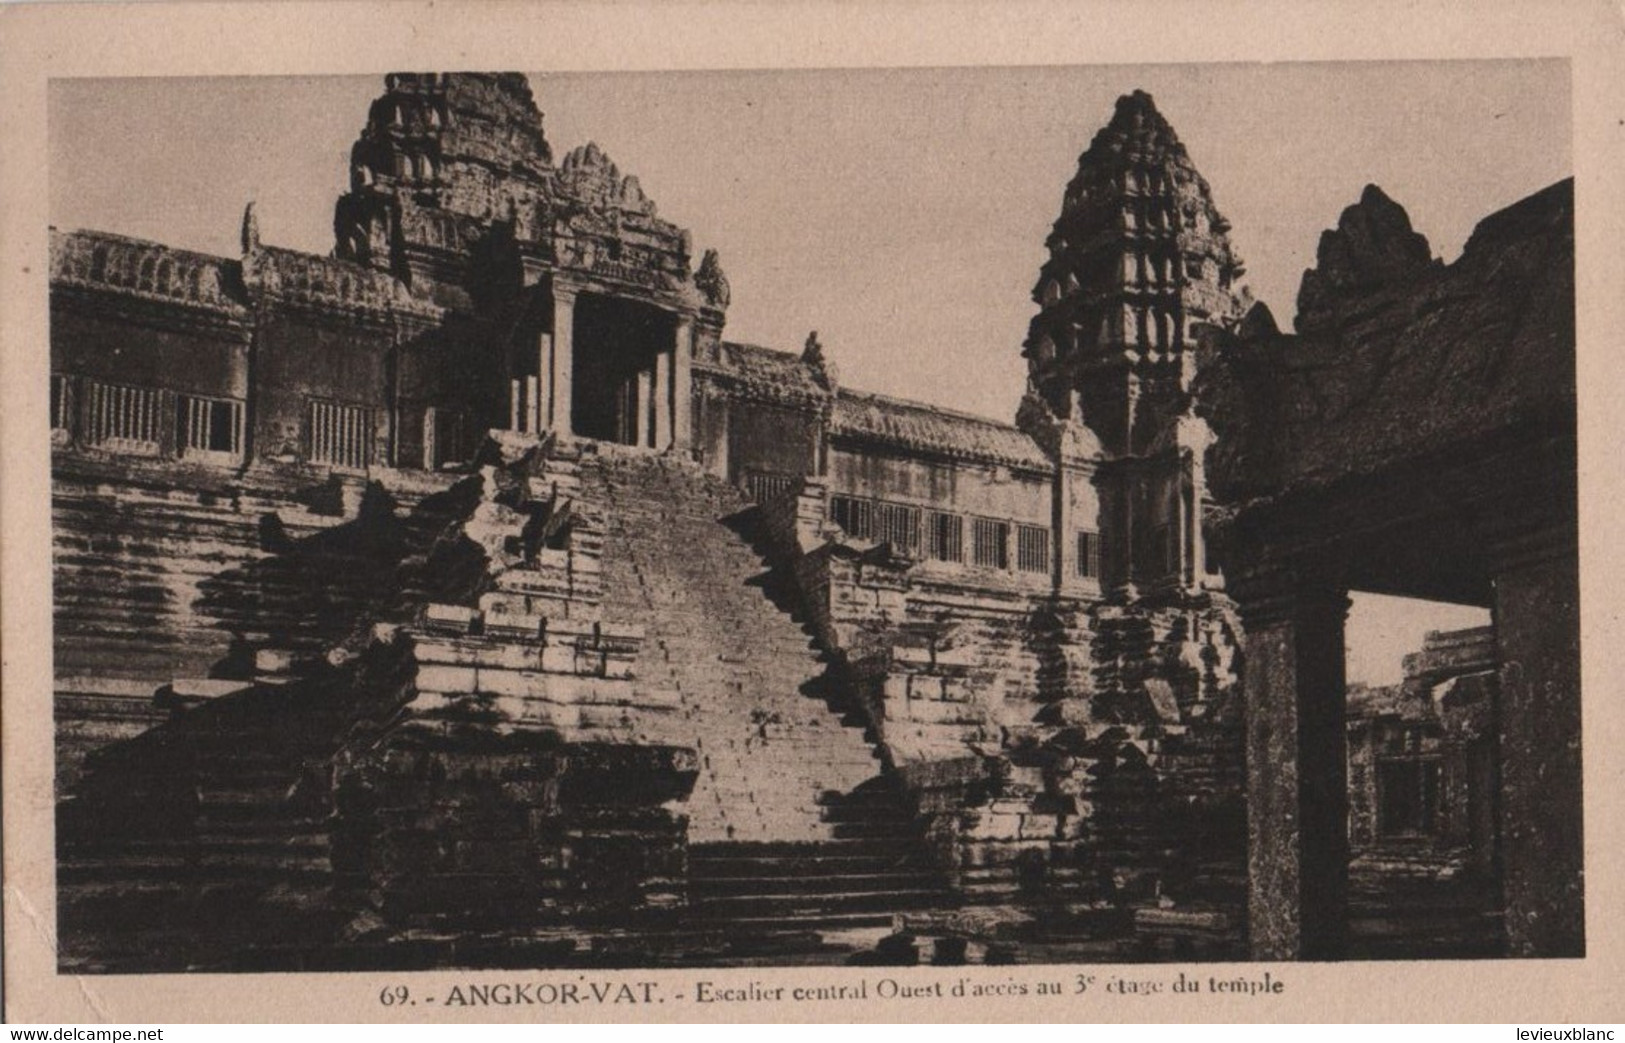 CAMBODGE /ANGKOR VAT/Esdcalier Central Ouest D'accés Au 3éme étage Du Temple /Vers 1910-1920     CPDIV358 - Cambodge